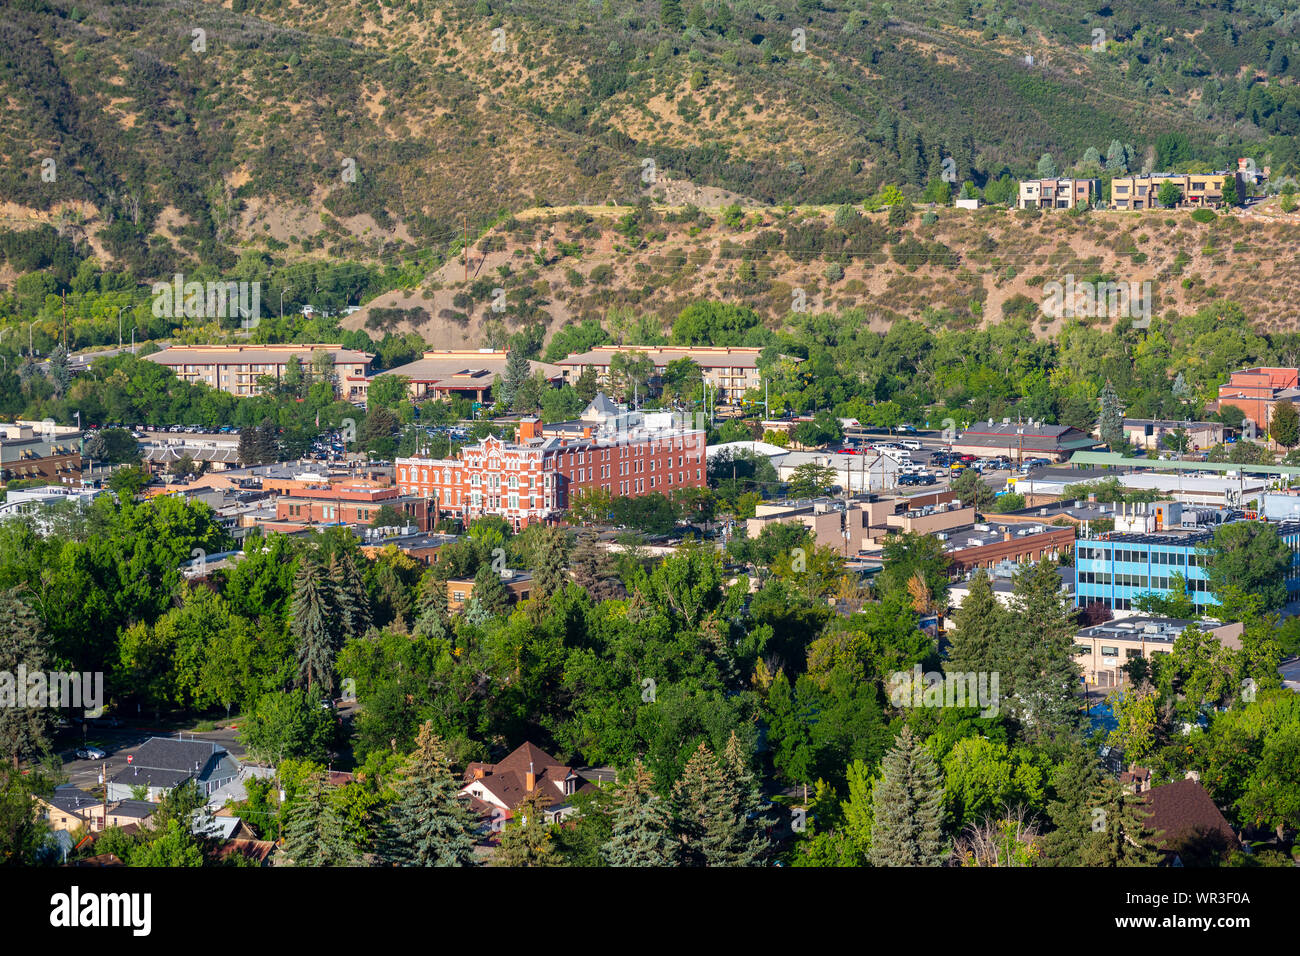 Downtown Durango, Colorado on a Sunny Day Stock Photo